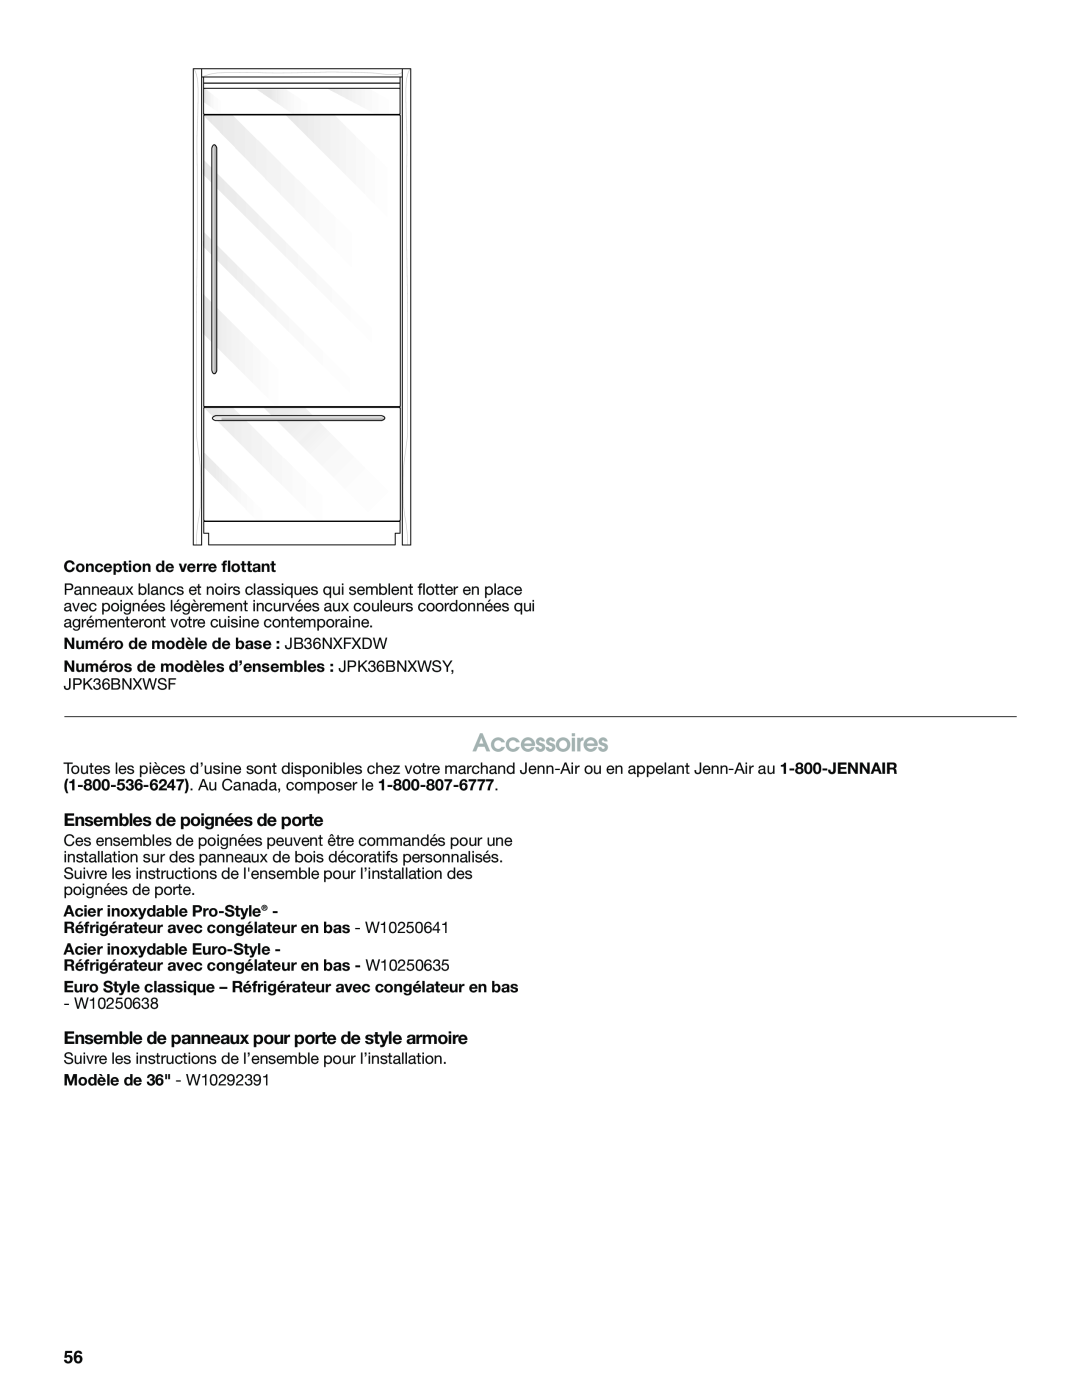 Jenn-Air W10379137A manual Accessoires, Ensembles de poignées de porte, Ensemble de panneaux pour porte de style armoire 